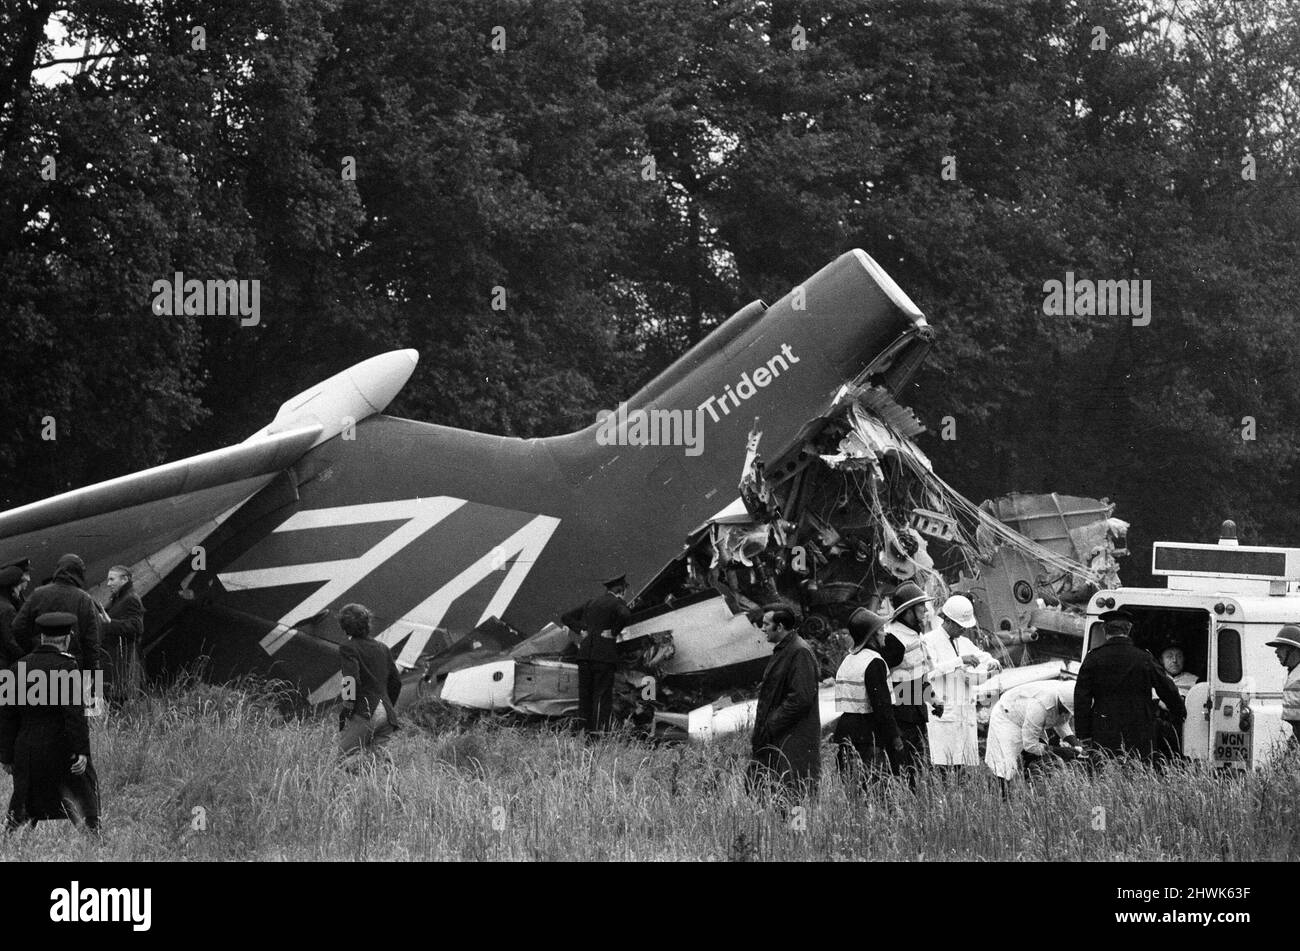 Der Passagierflug von British European Airways Flug 548 vom Flughafen London Heathrow nach Brüssel stürzte weniger als drei Minuten nach dem Start in der Nähe der Stadt Staines ab. Alle 118 Personen an Bord wurden getötet. Der Unfall wurde als Staines-Katastrophe bekannt. 18.. Juni 1972. Stockfoto